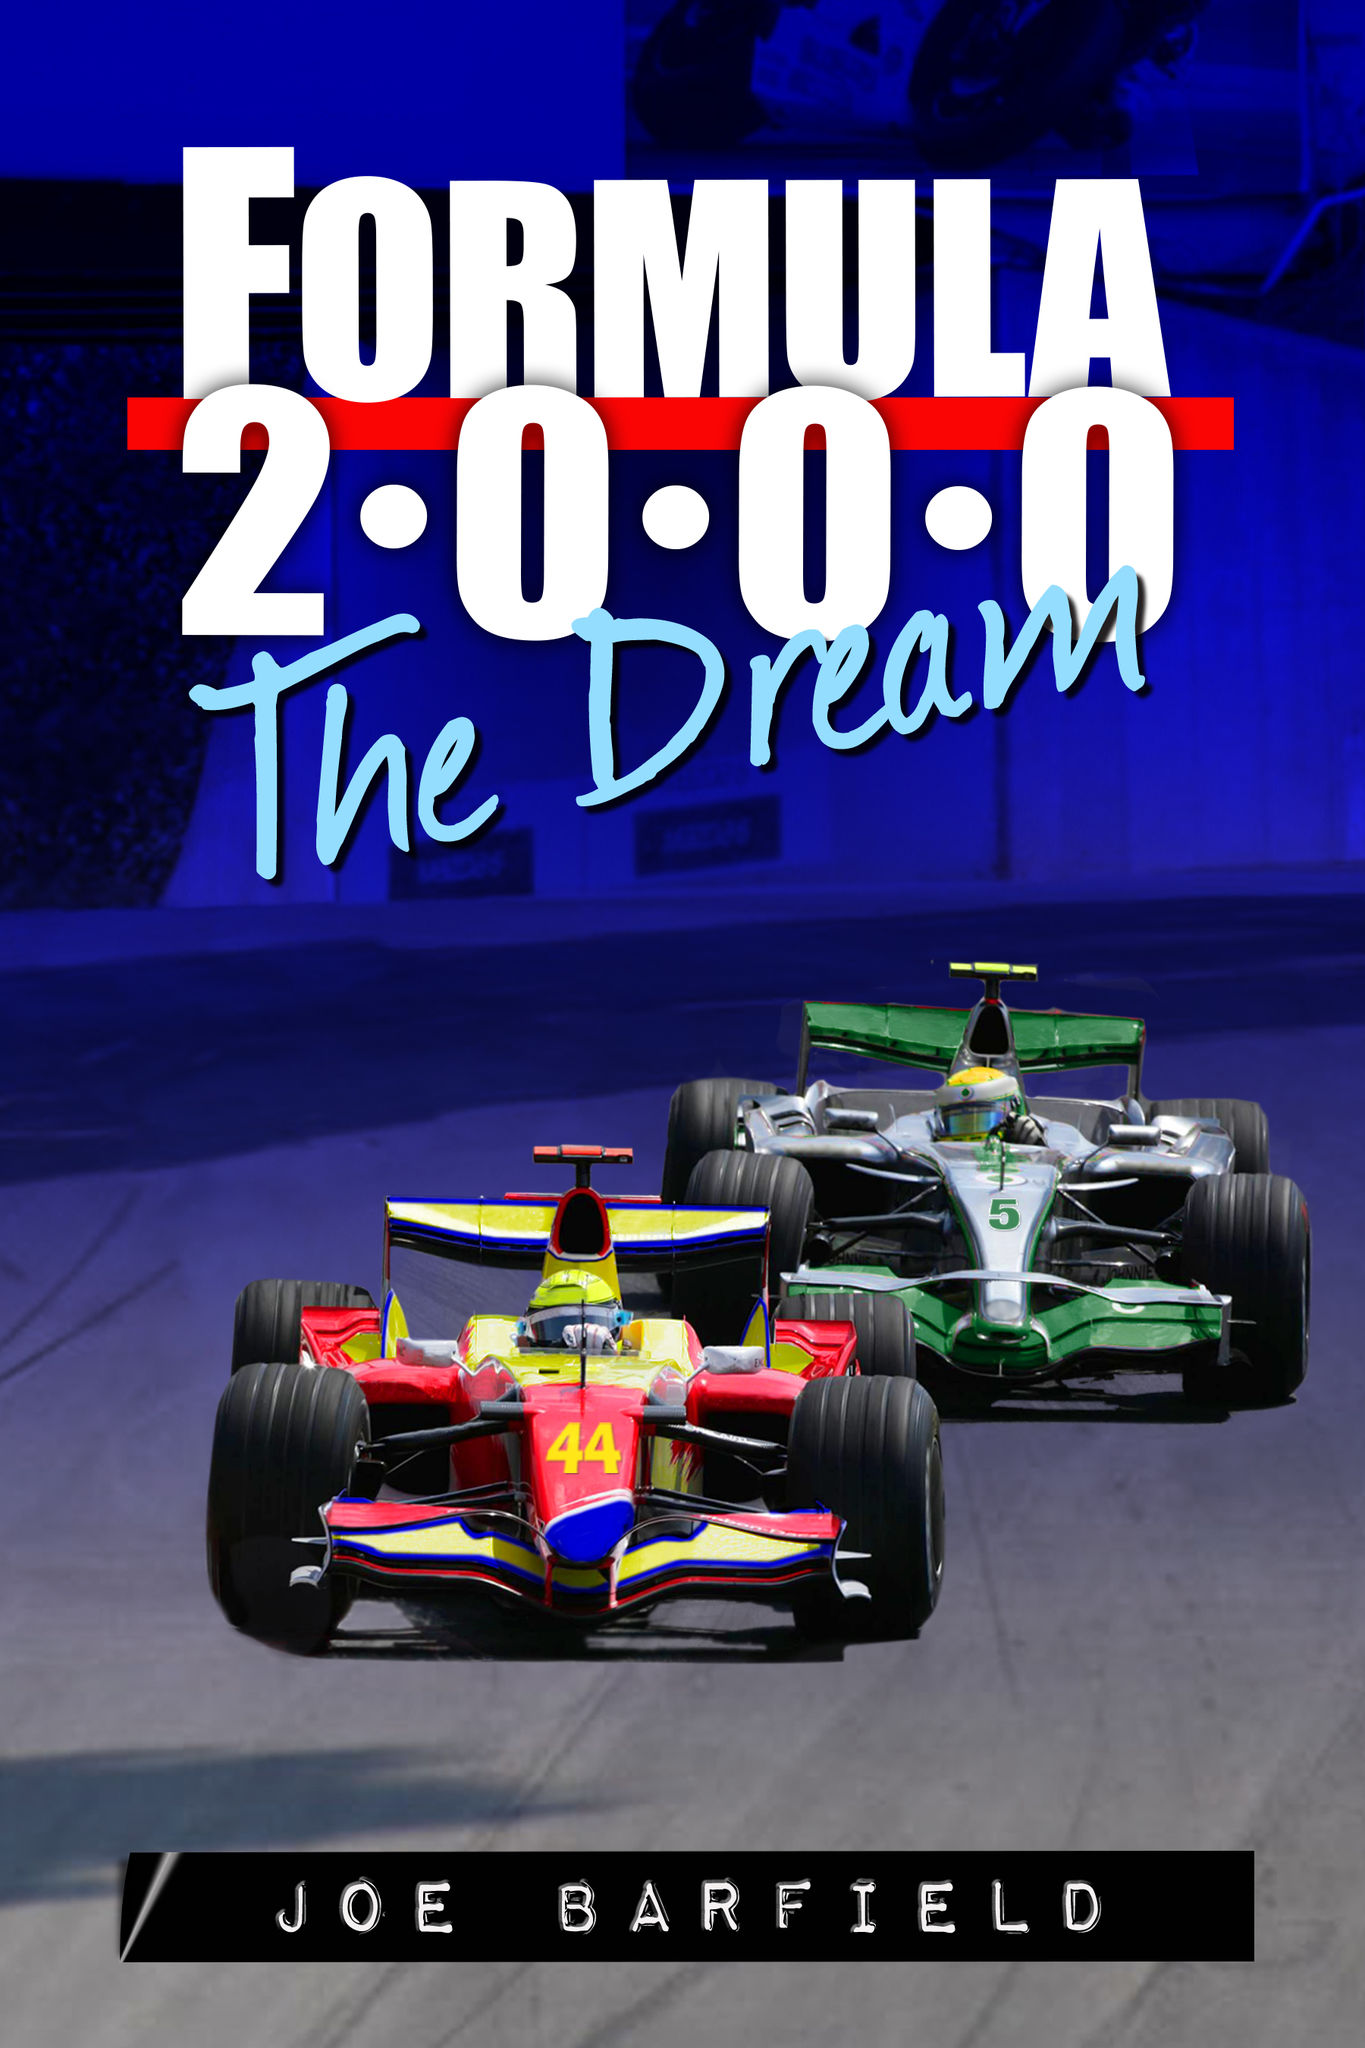 FORMULA 2000, THE DREAM